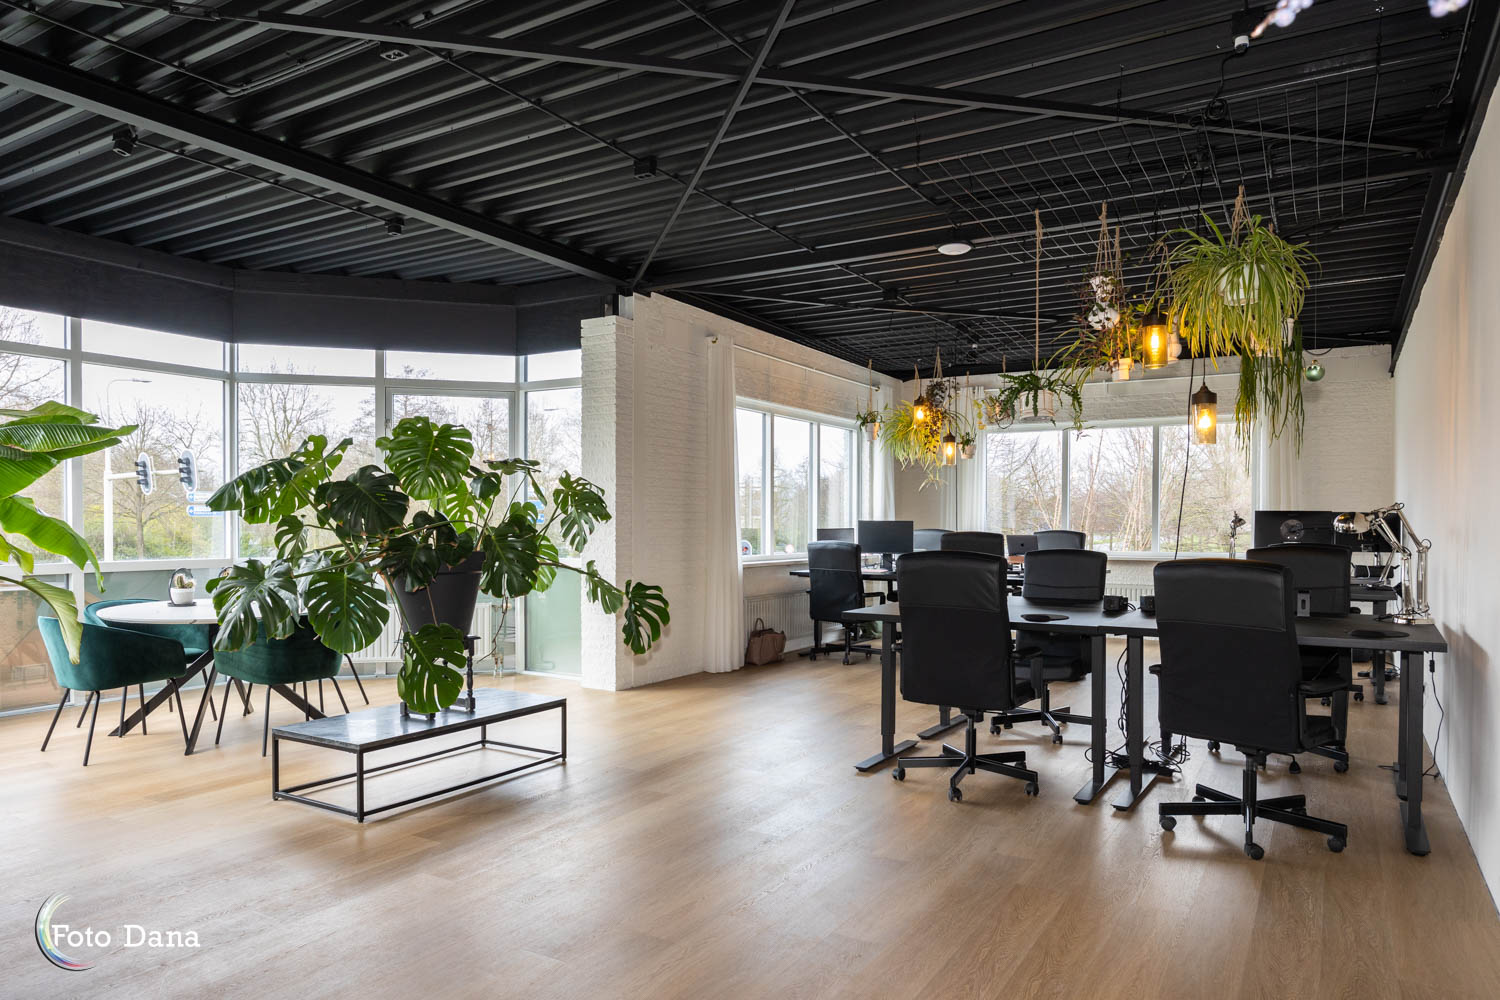 flexruimte kantoor met diverse bureau's en planten